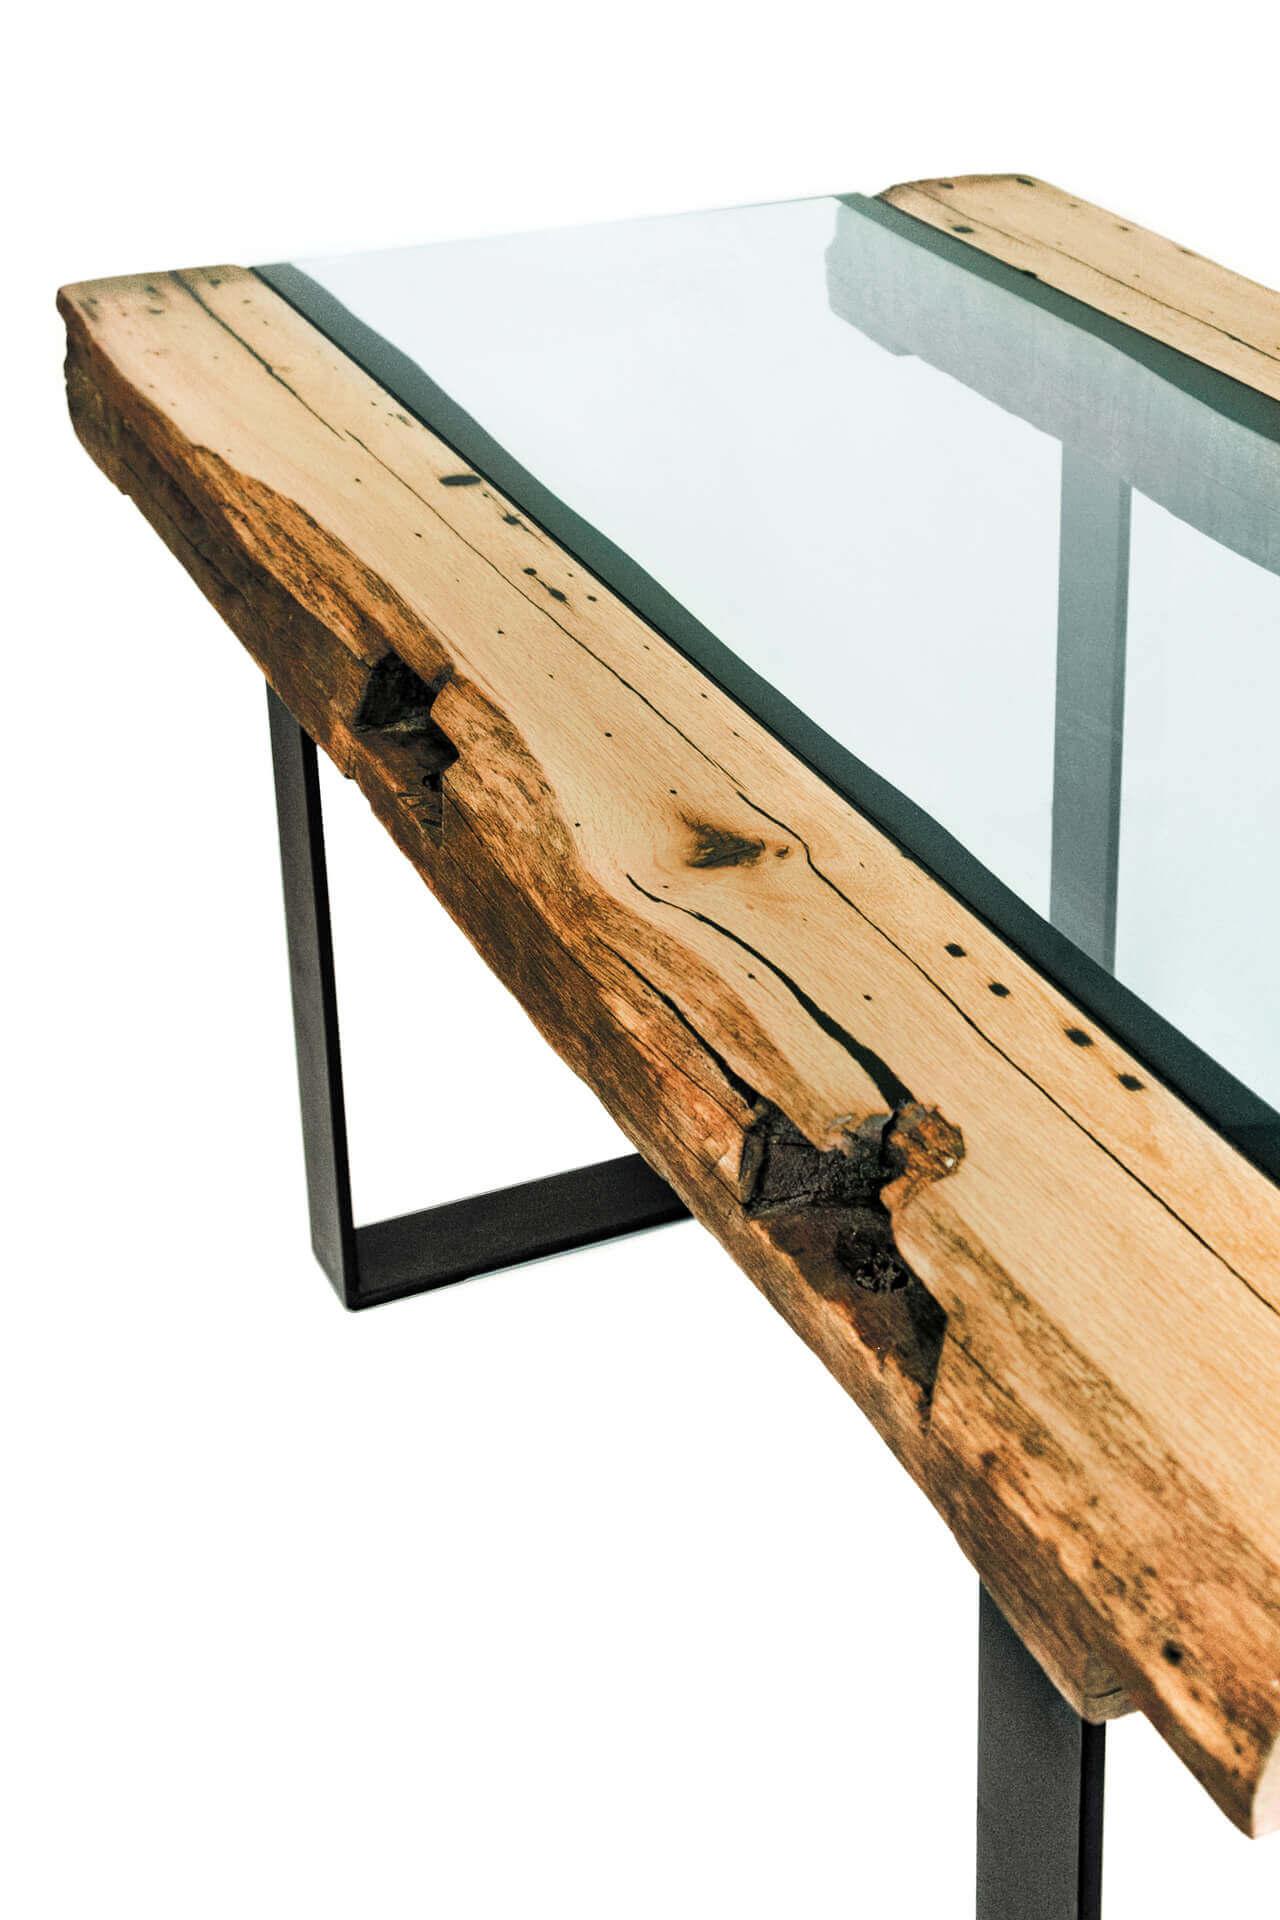 Sitzgruppe-Tisch-Bank-Eiche-massiv-Balken-rustikal-Glasplatte3.jpg